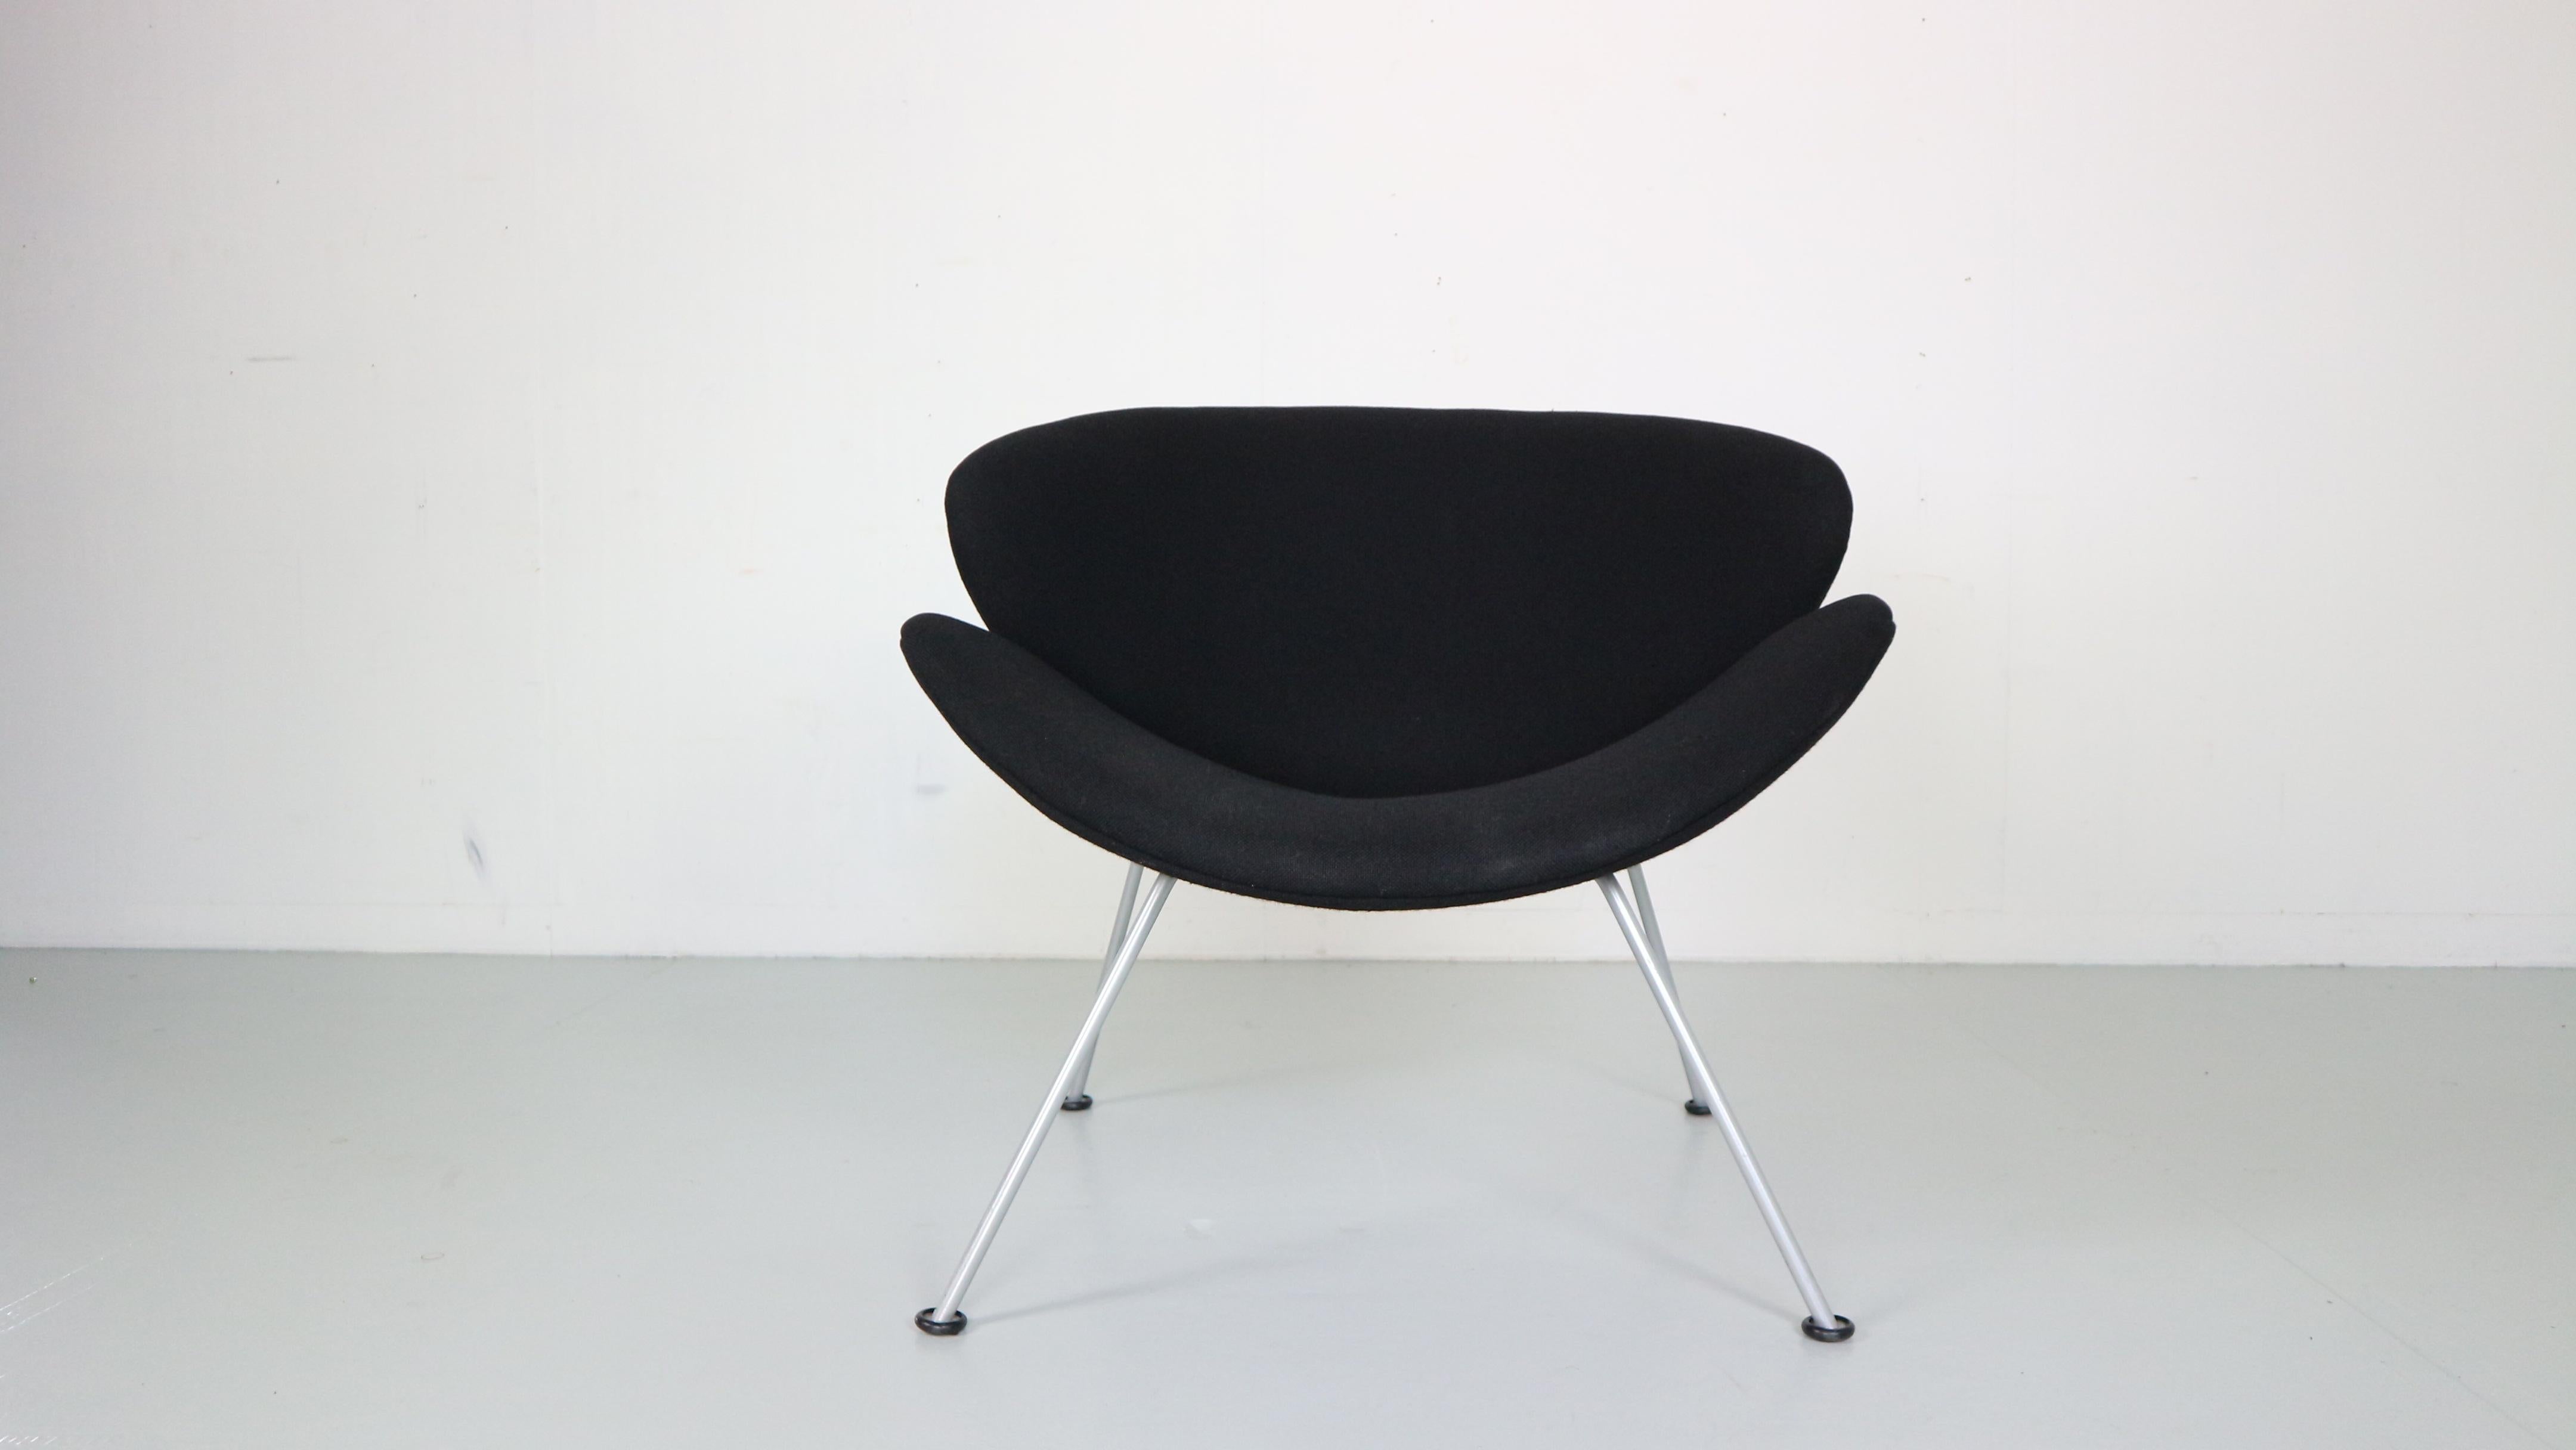 Loungesessel, entworfen von Pierre Paulin für die Manufaktur Artifort, 1960er Jahre, Holland.
Das Modell des Stuhls heißt 